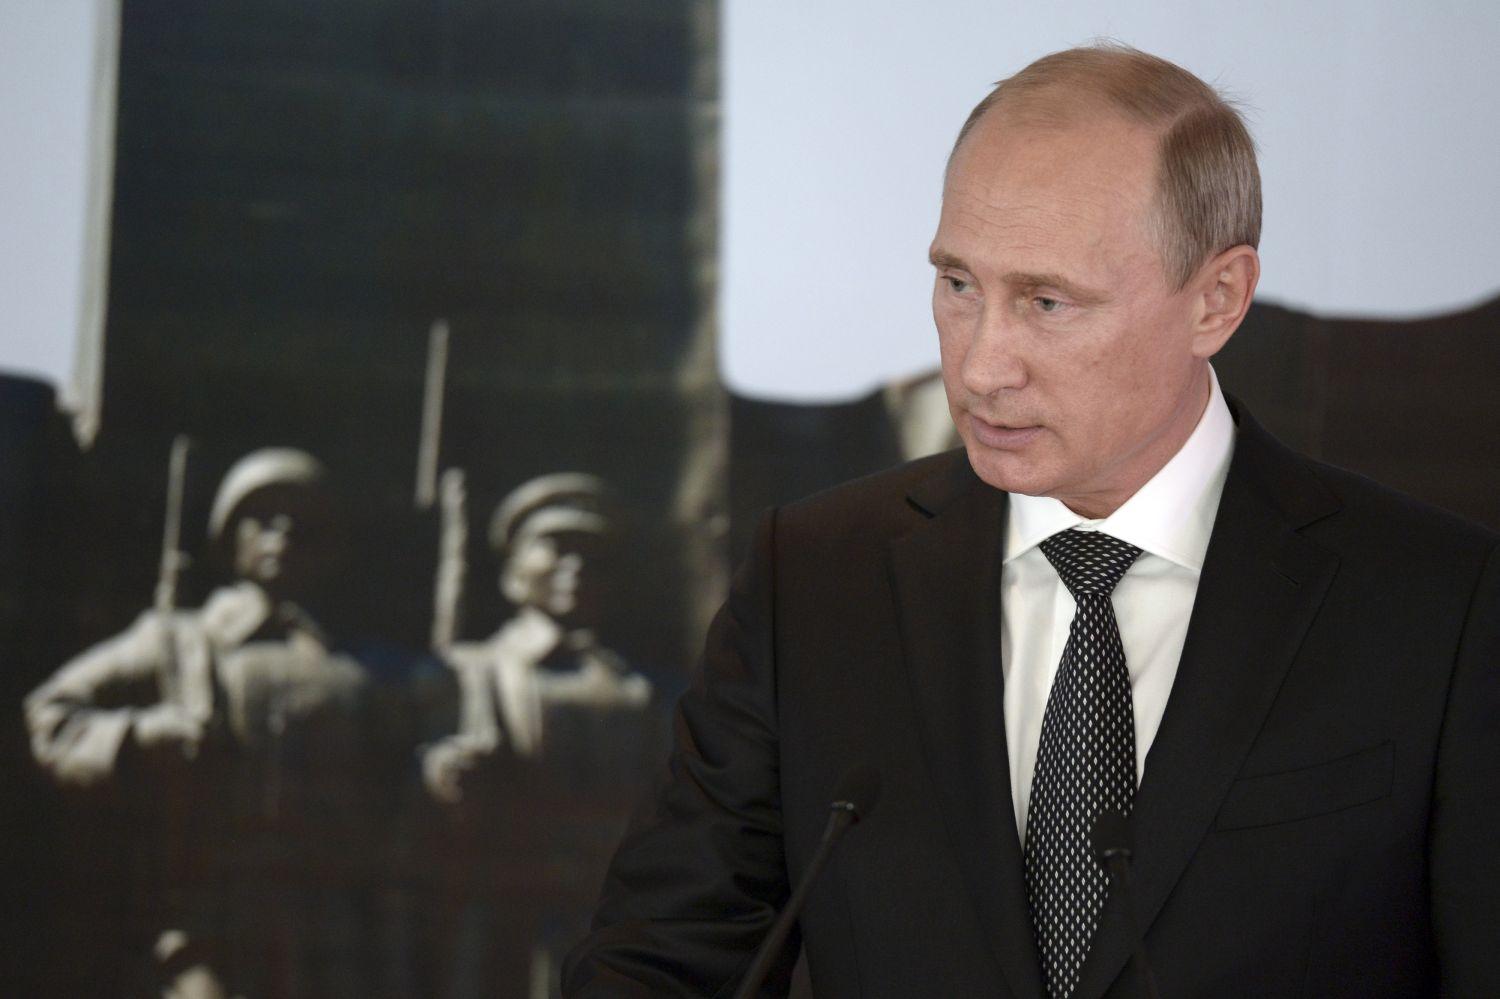 Putyin Momgóliában. A tűzszünet csak „fizikailag” lehetetlen – állítja a Kreml